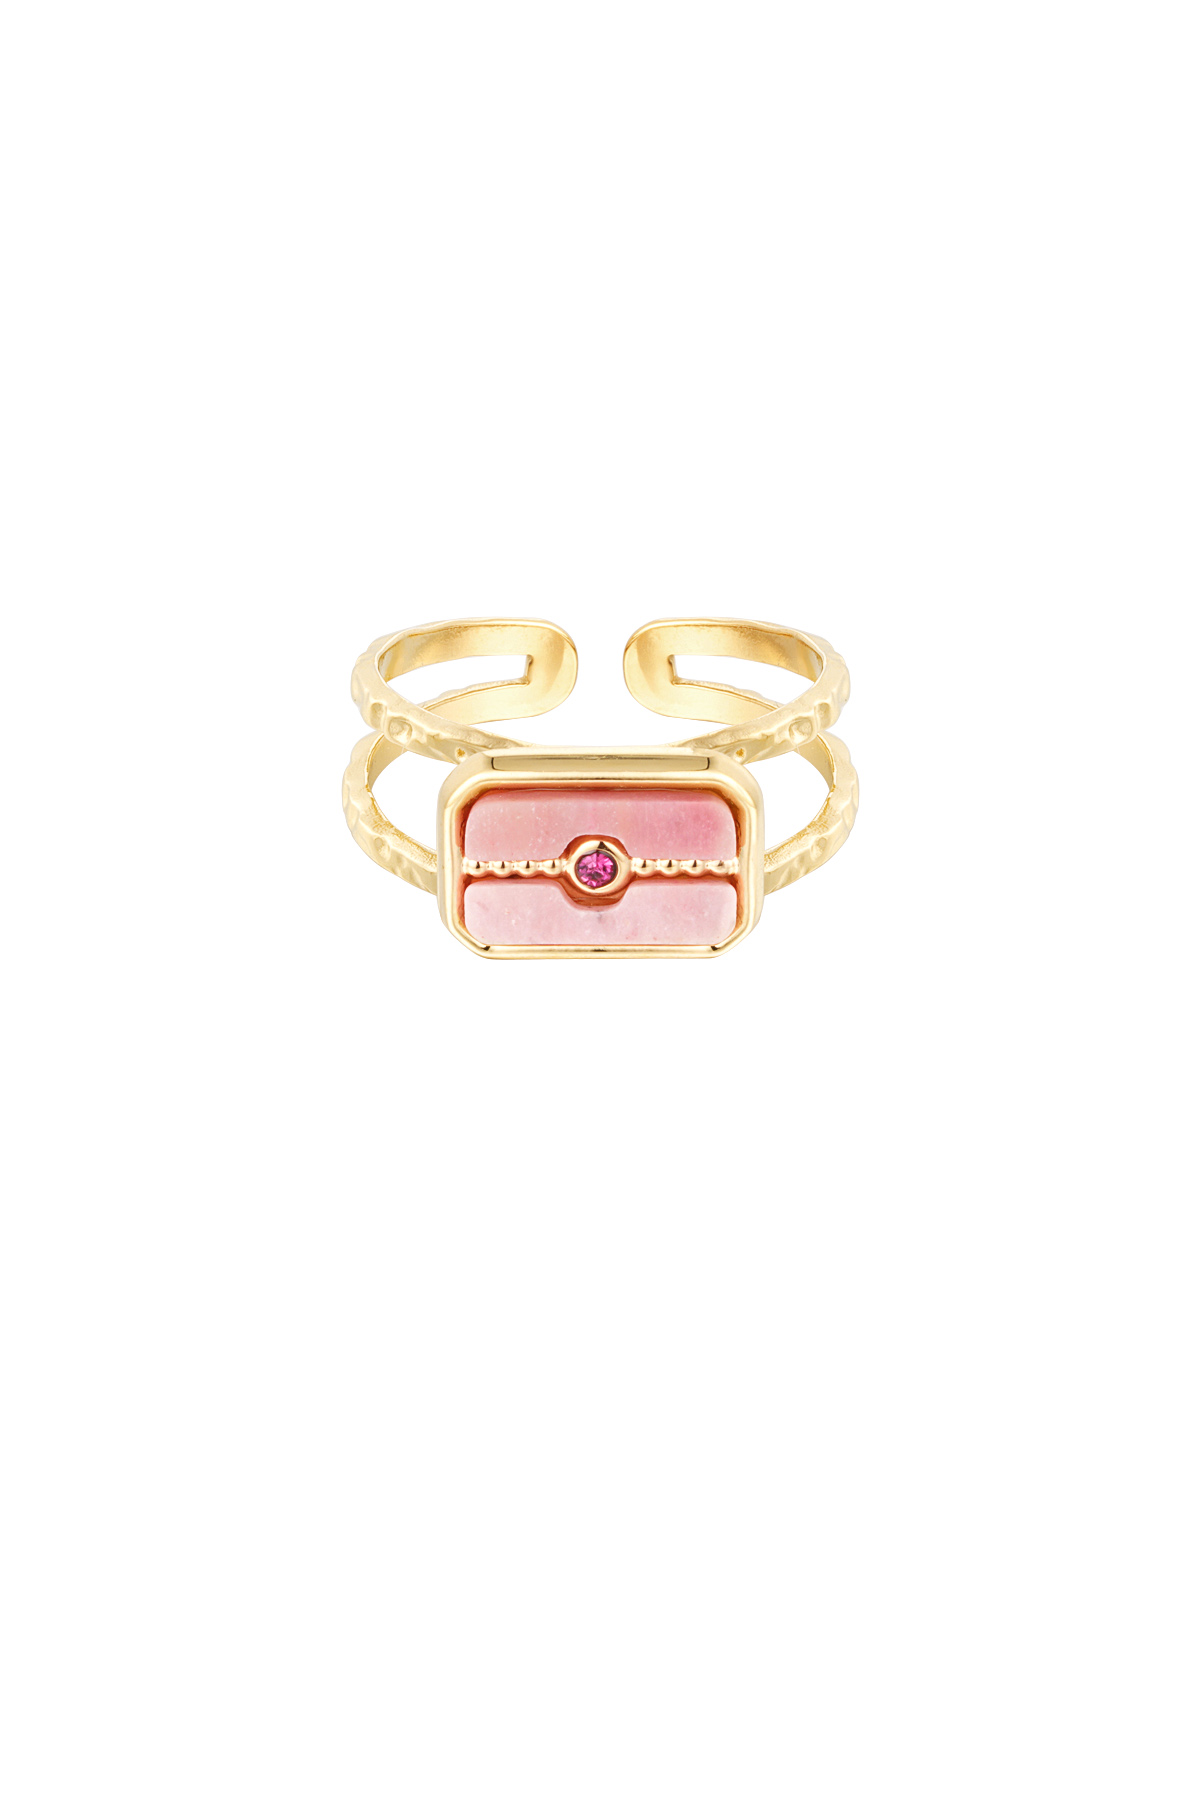 Anello pietra decorata - oro/rosa h5 